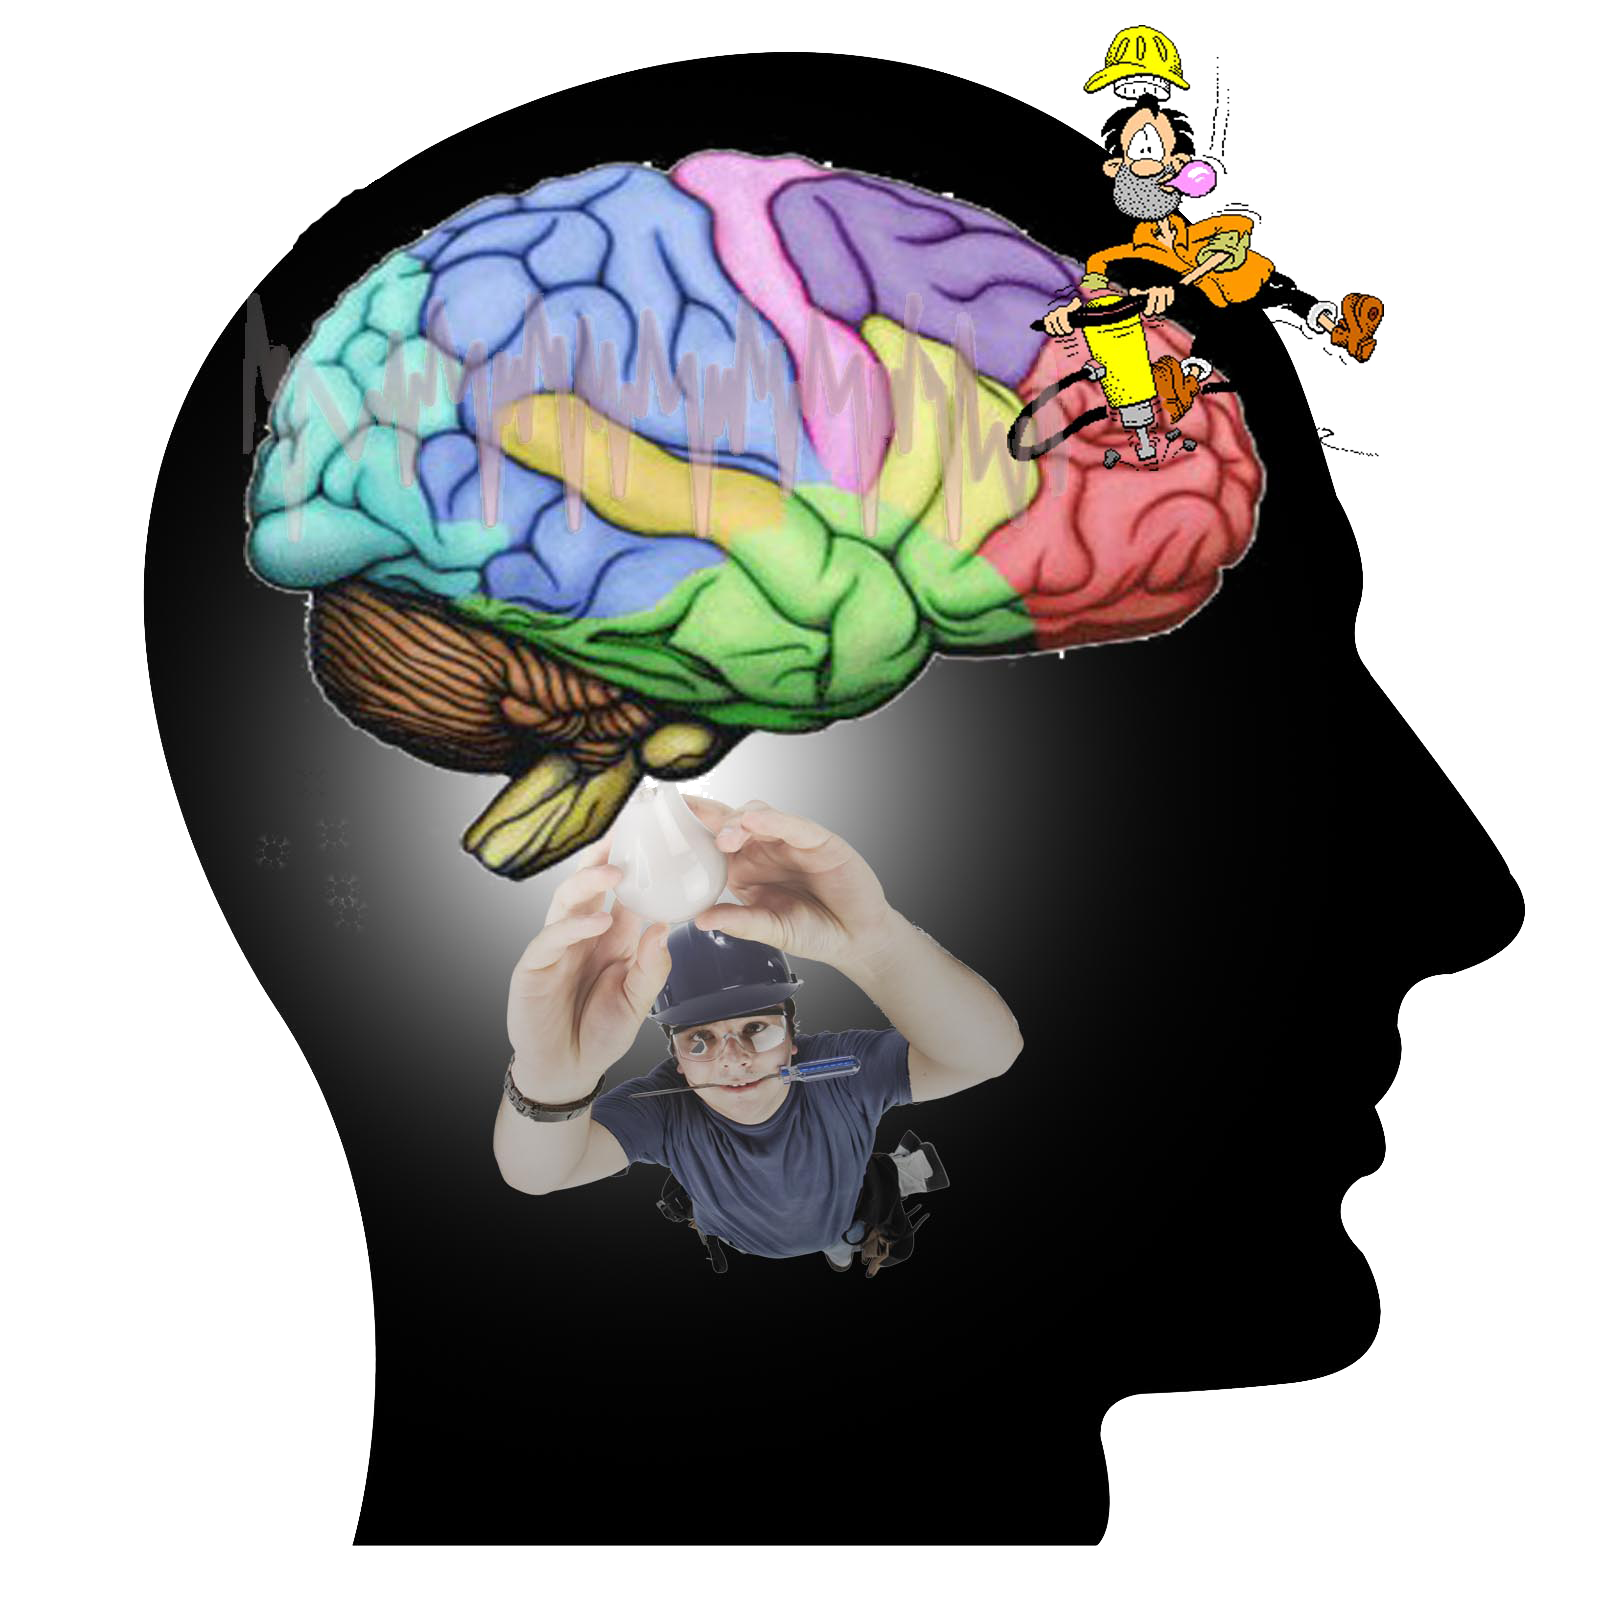 Мозг уникален. Мозг иллюстрация. Мыслящий мозг. Креативный мозг.